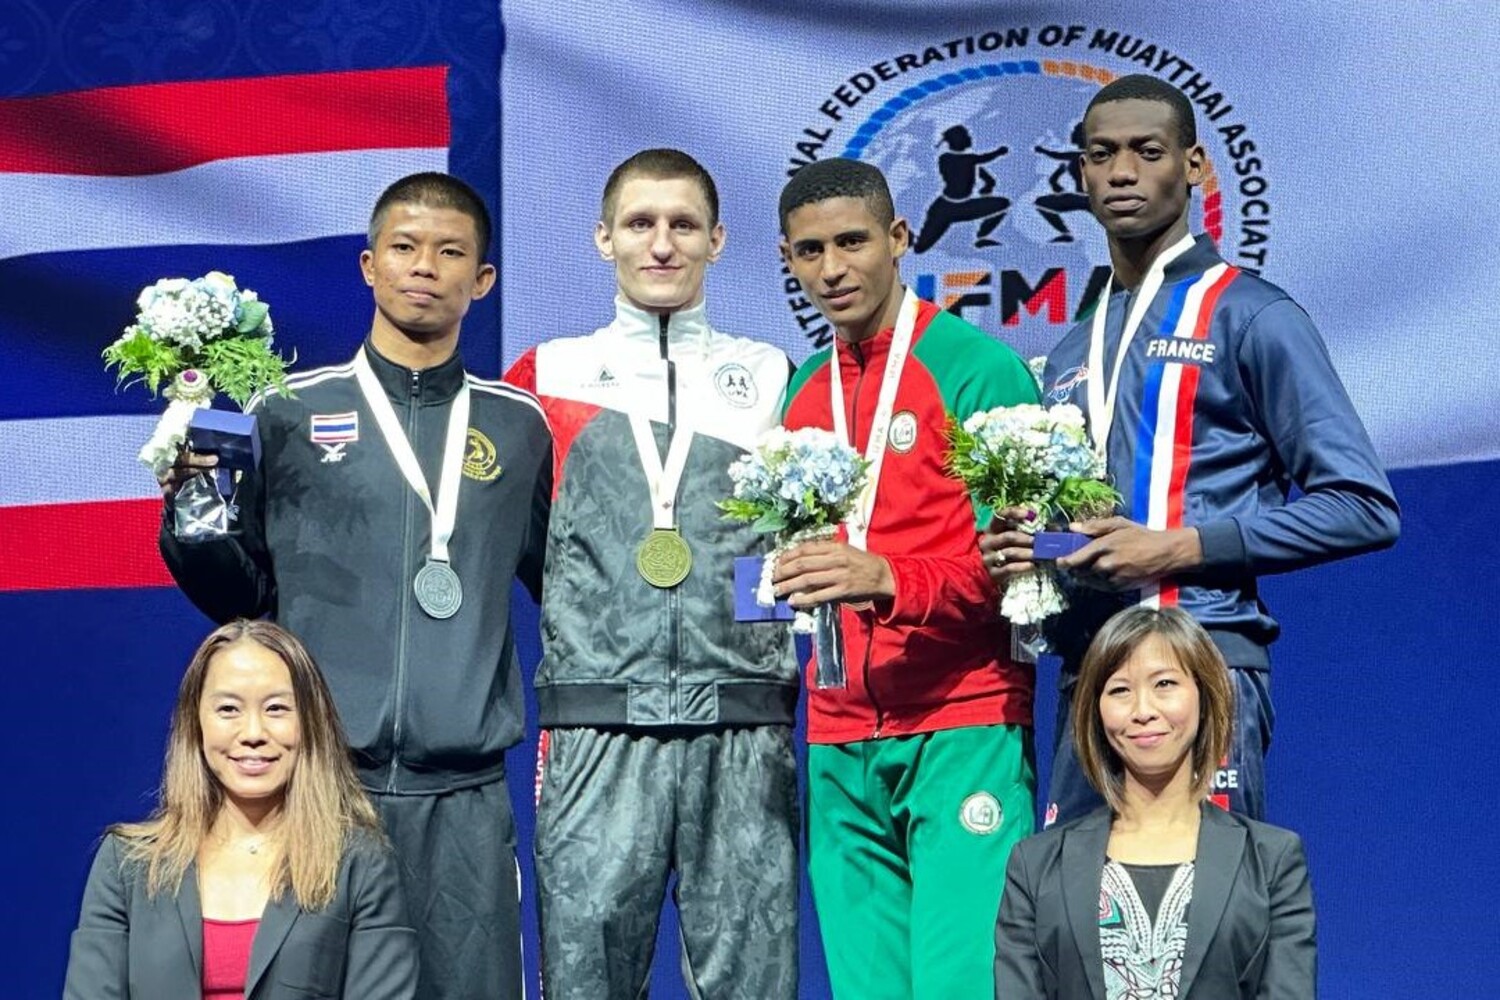 Российские спортсмены стали победителями чемпионата мира по тайскому боксу в Бангкоке при поддержке компании Стройсервис. Стройсервис